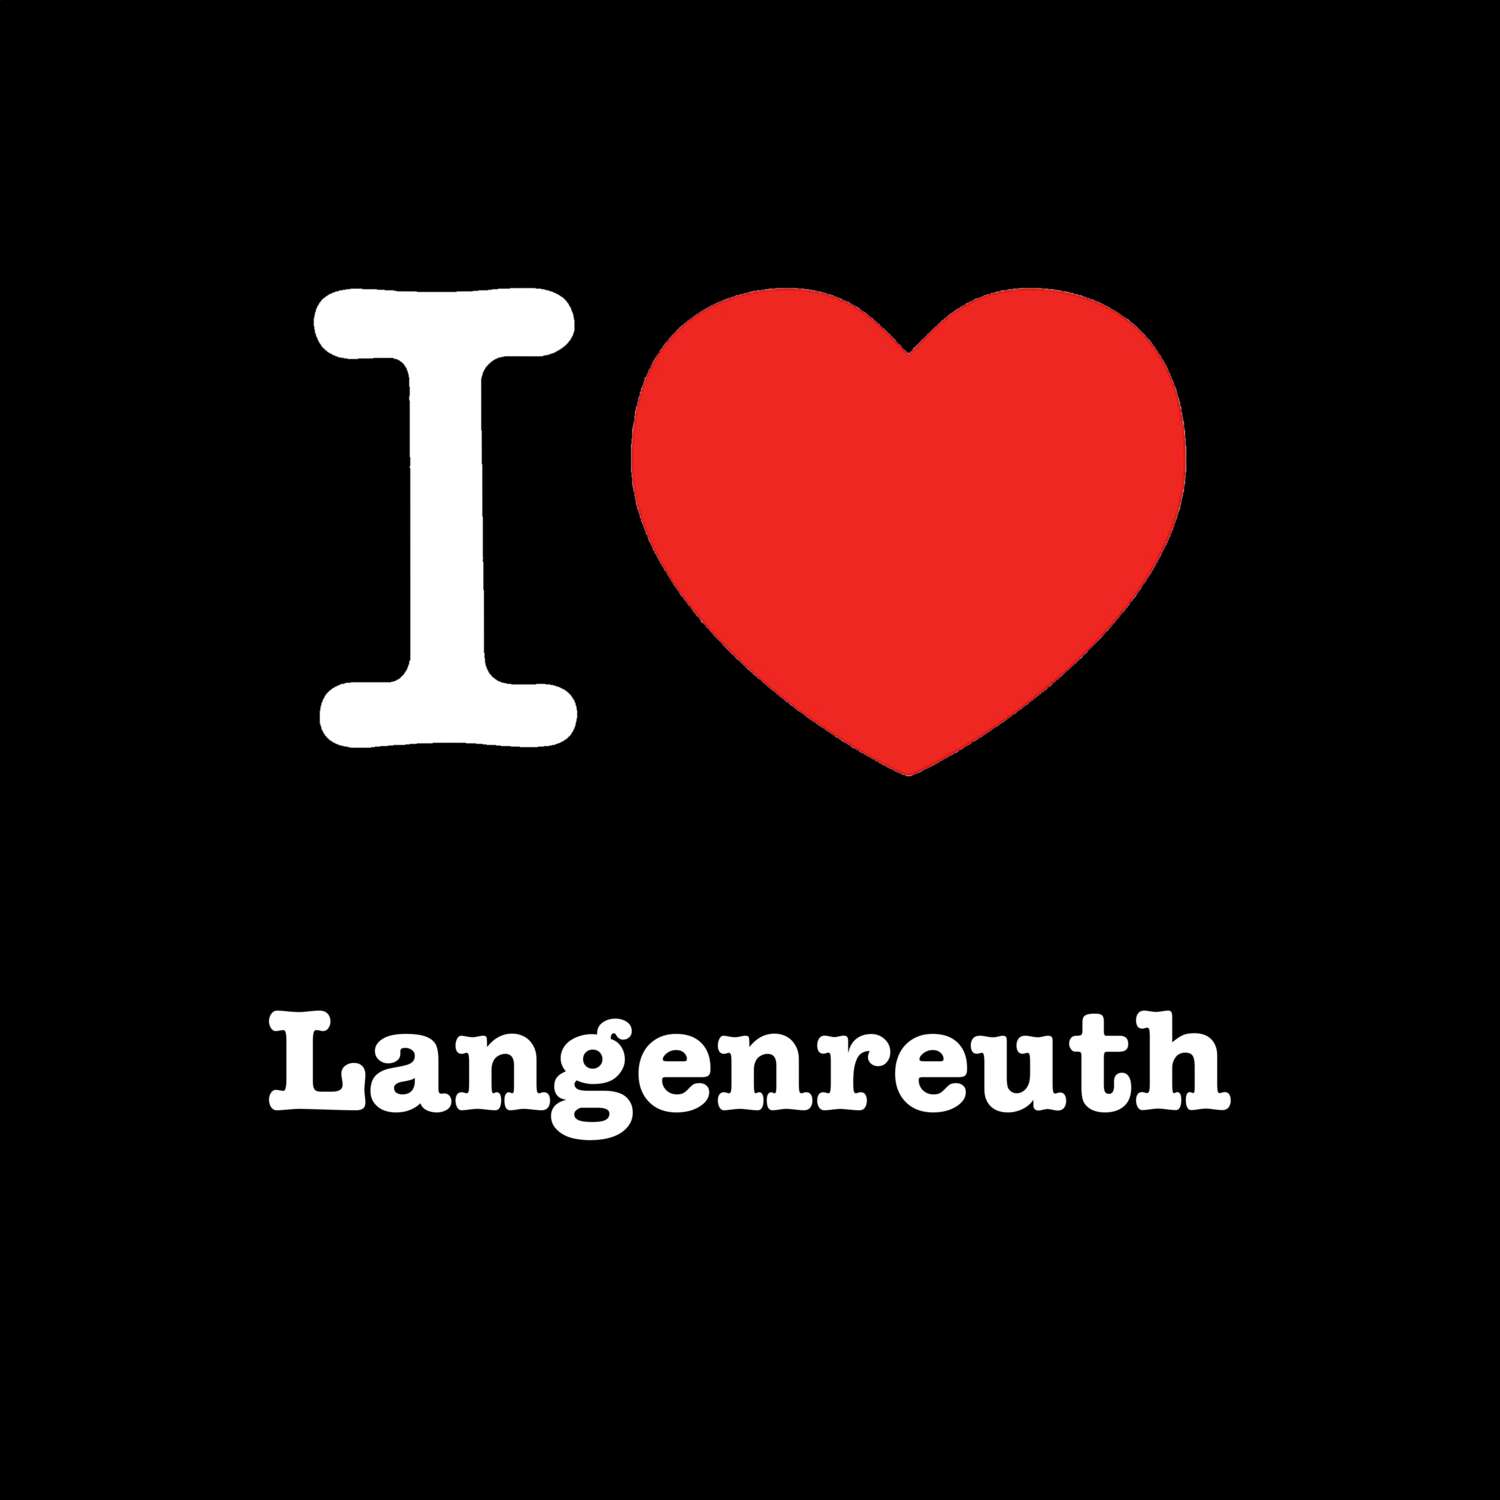 Langenreuth T-Shirt »I love«